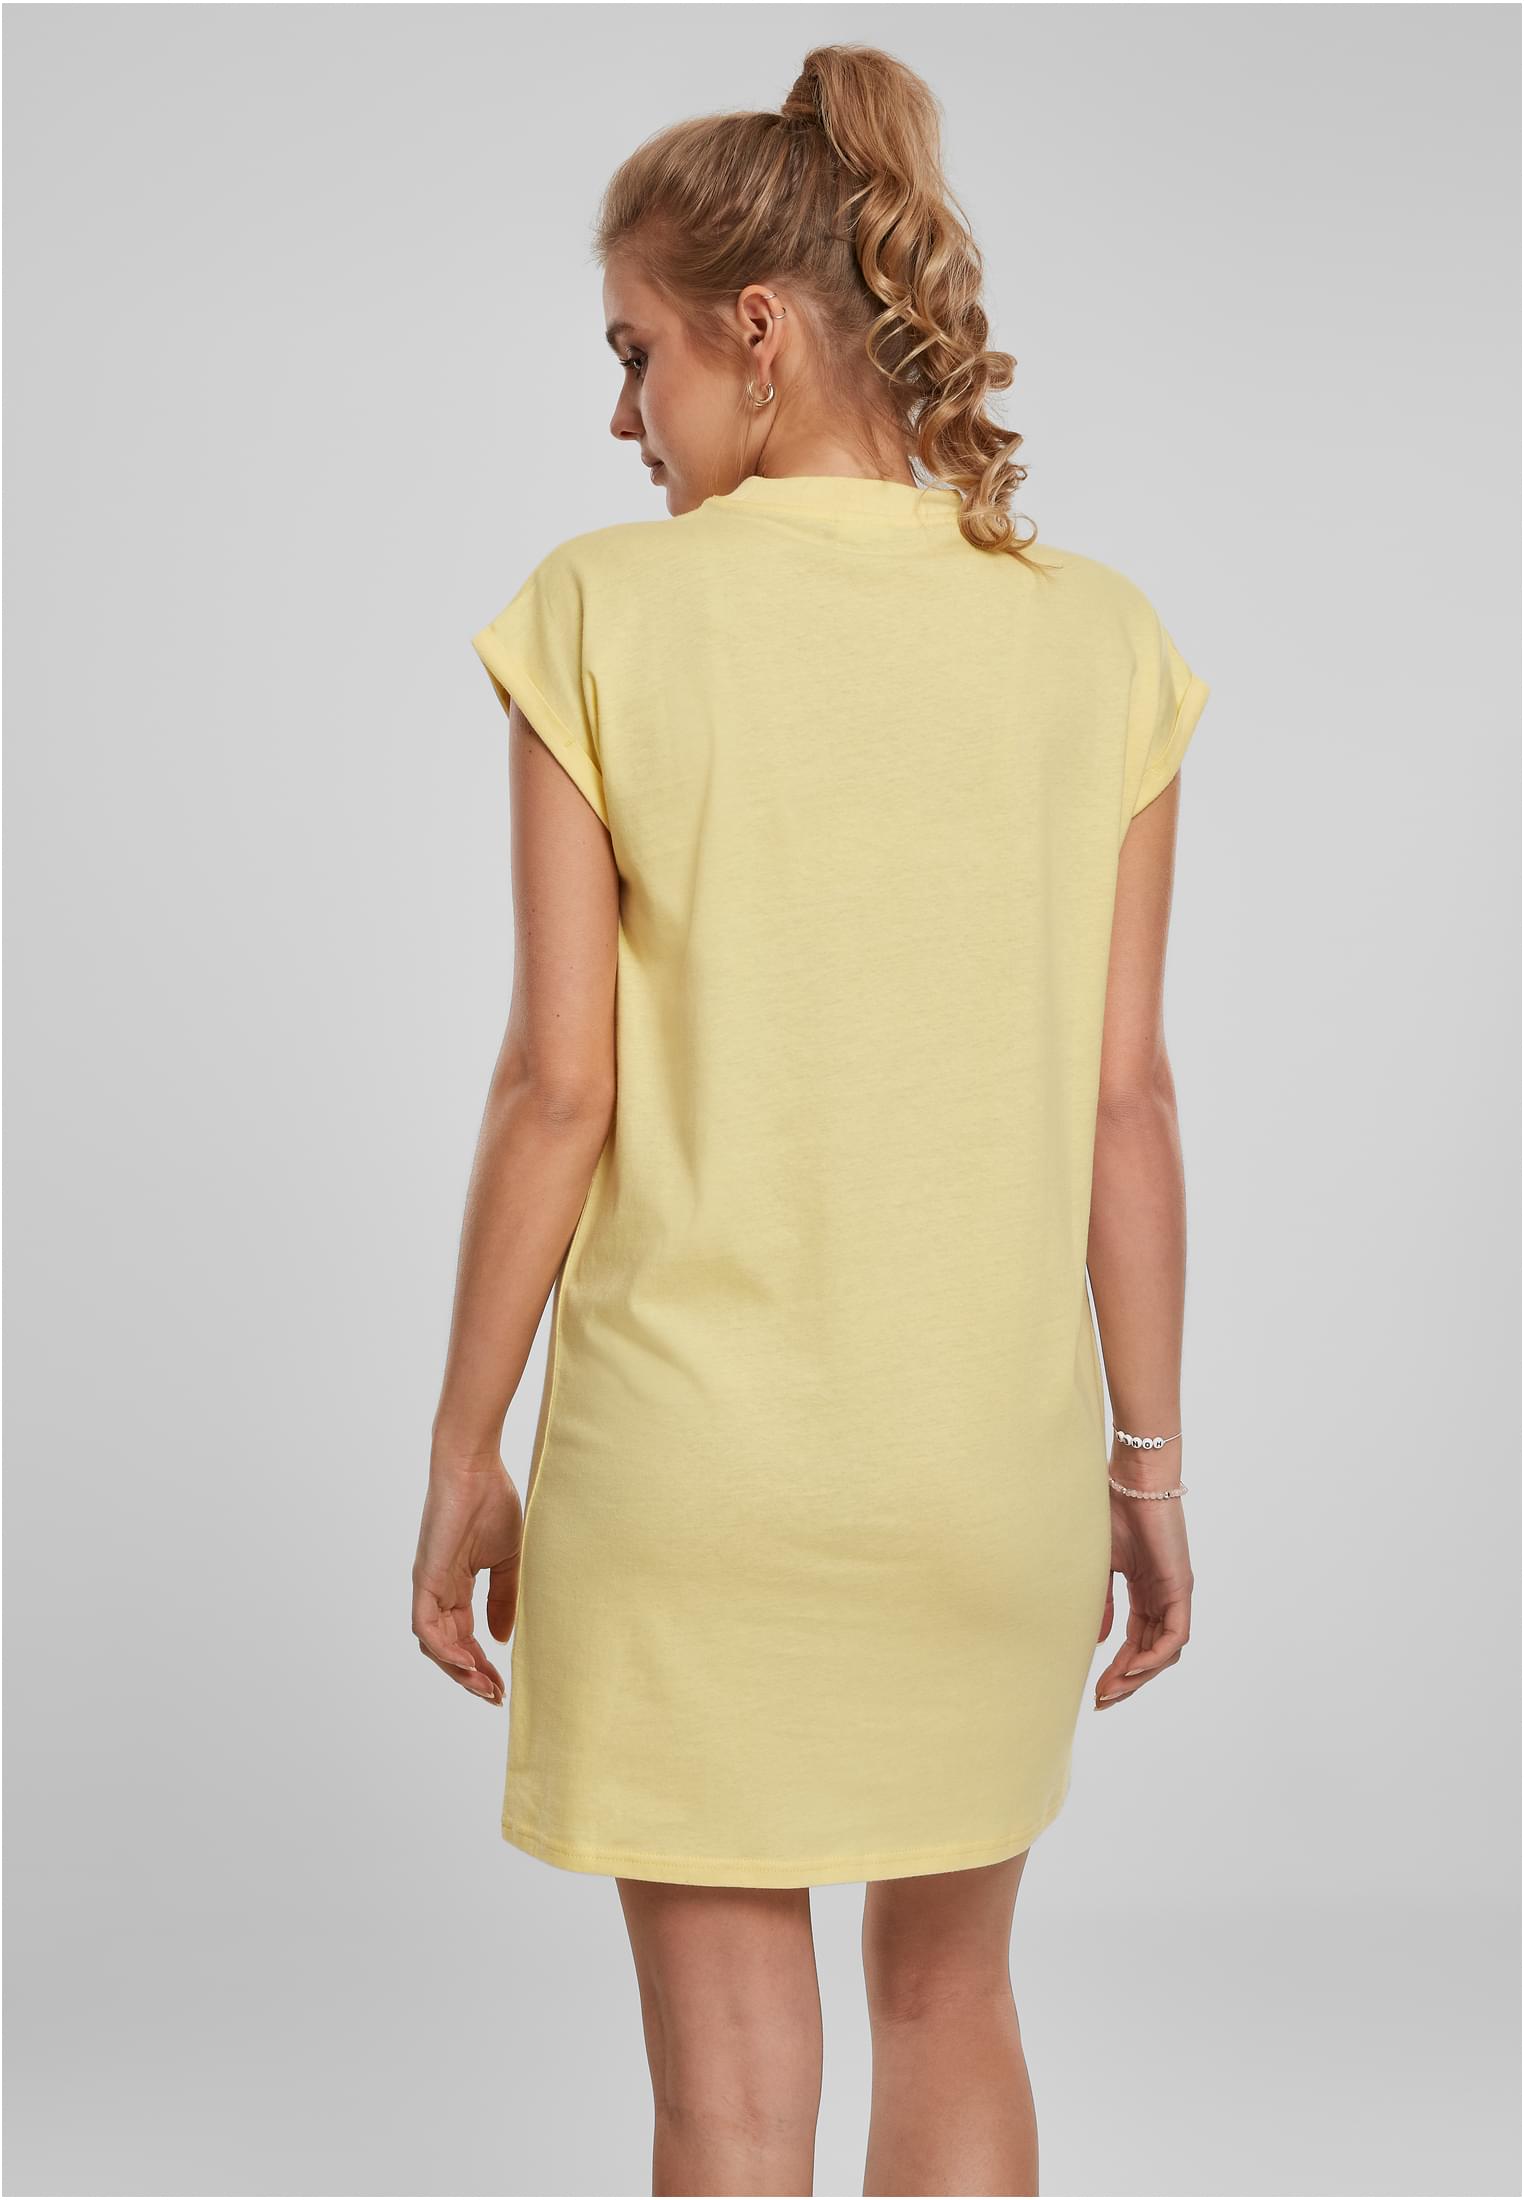 Frauen Ladies Turtle Extended Shoulder Dress in Farbe vintagesun